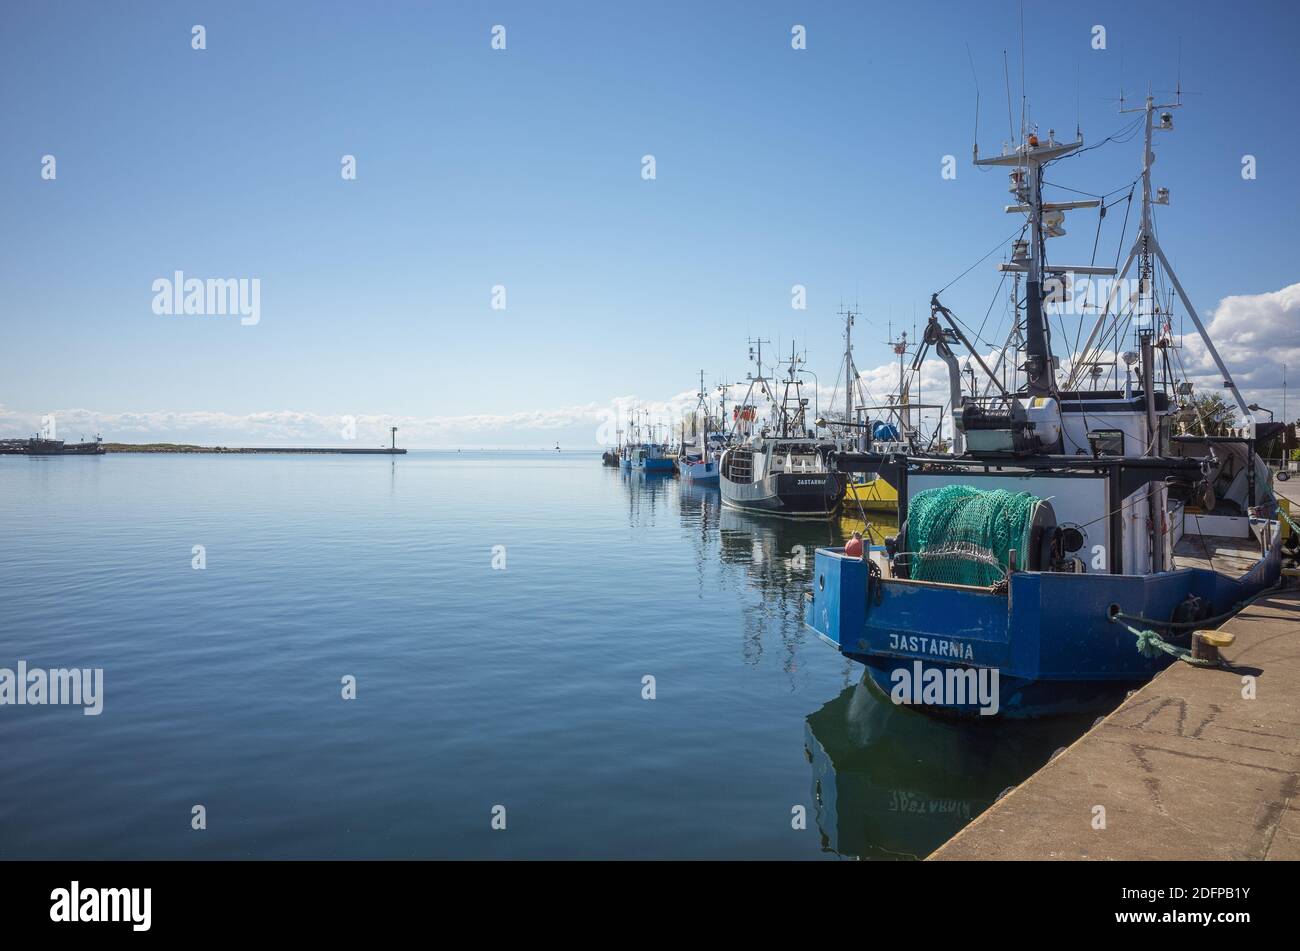 Jastarnia, Poland, April 26, 2020. Fishing boats in the marina in Jastarnia, Hel peninsula Stock Photo